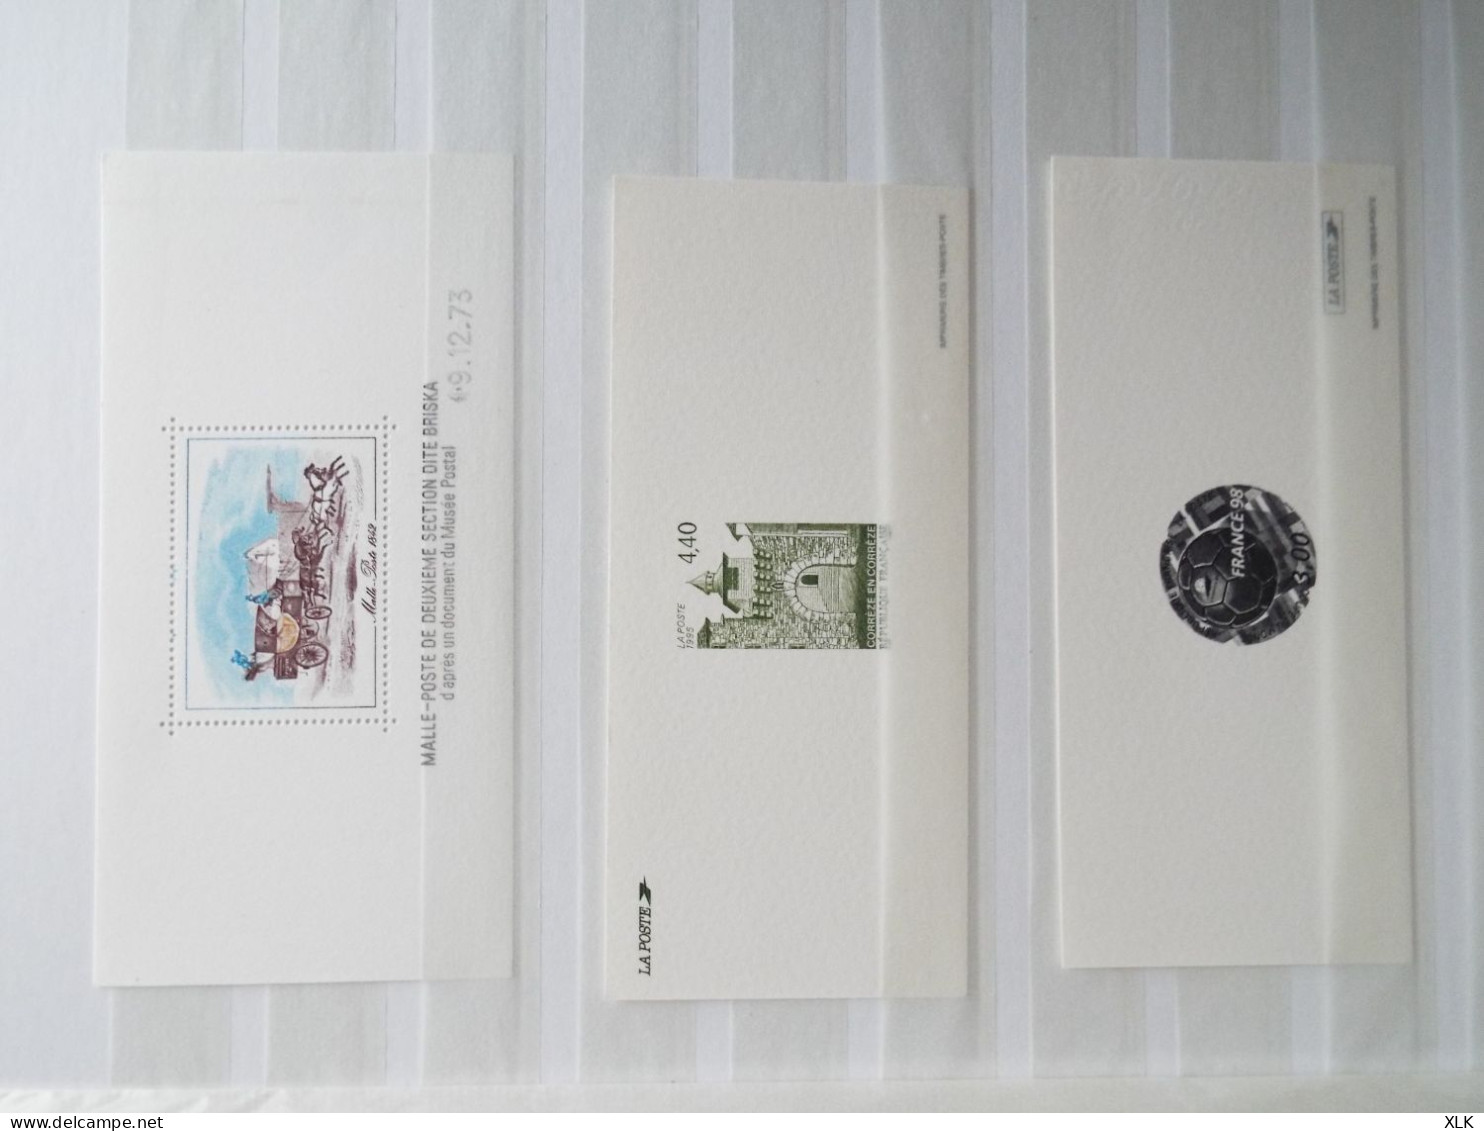 France - 2 albums - Gravure imprimerie timbres poste dont les Marianne